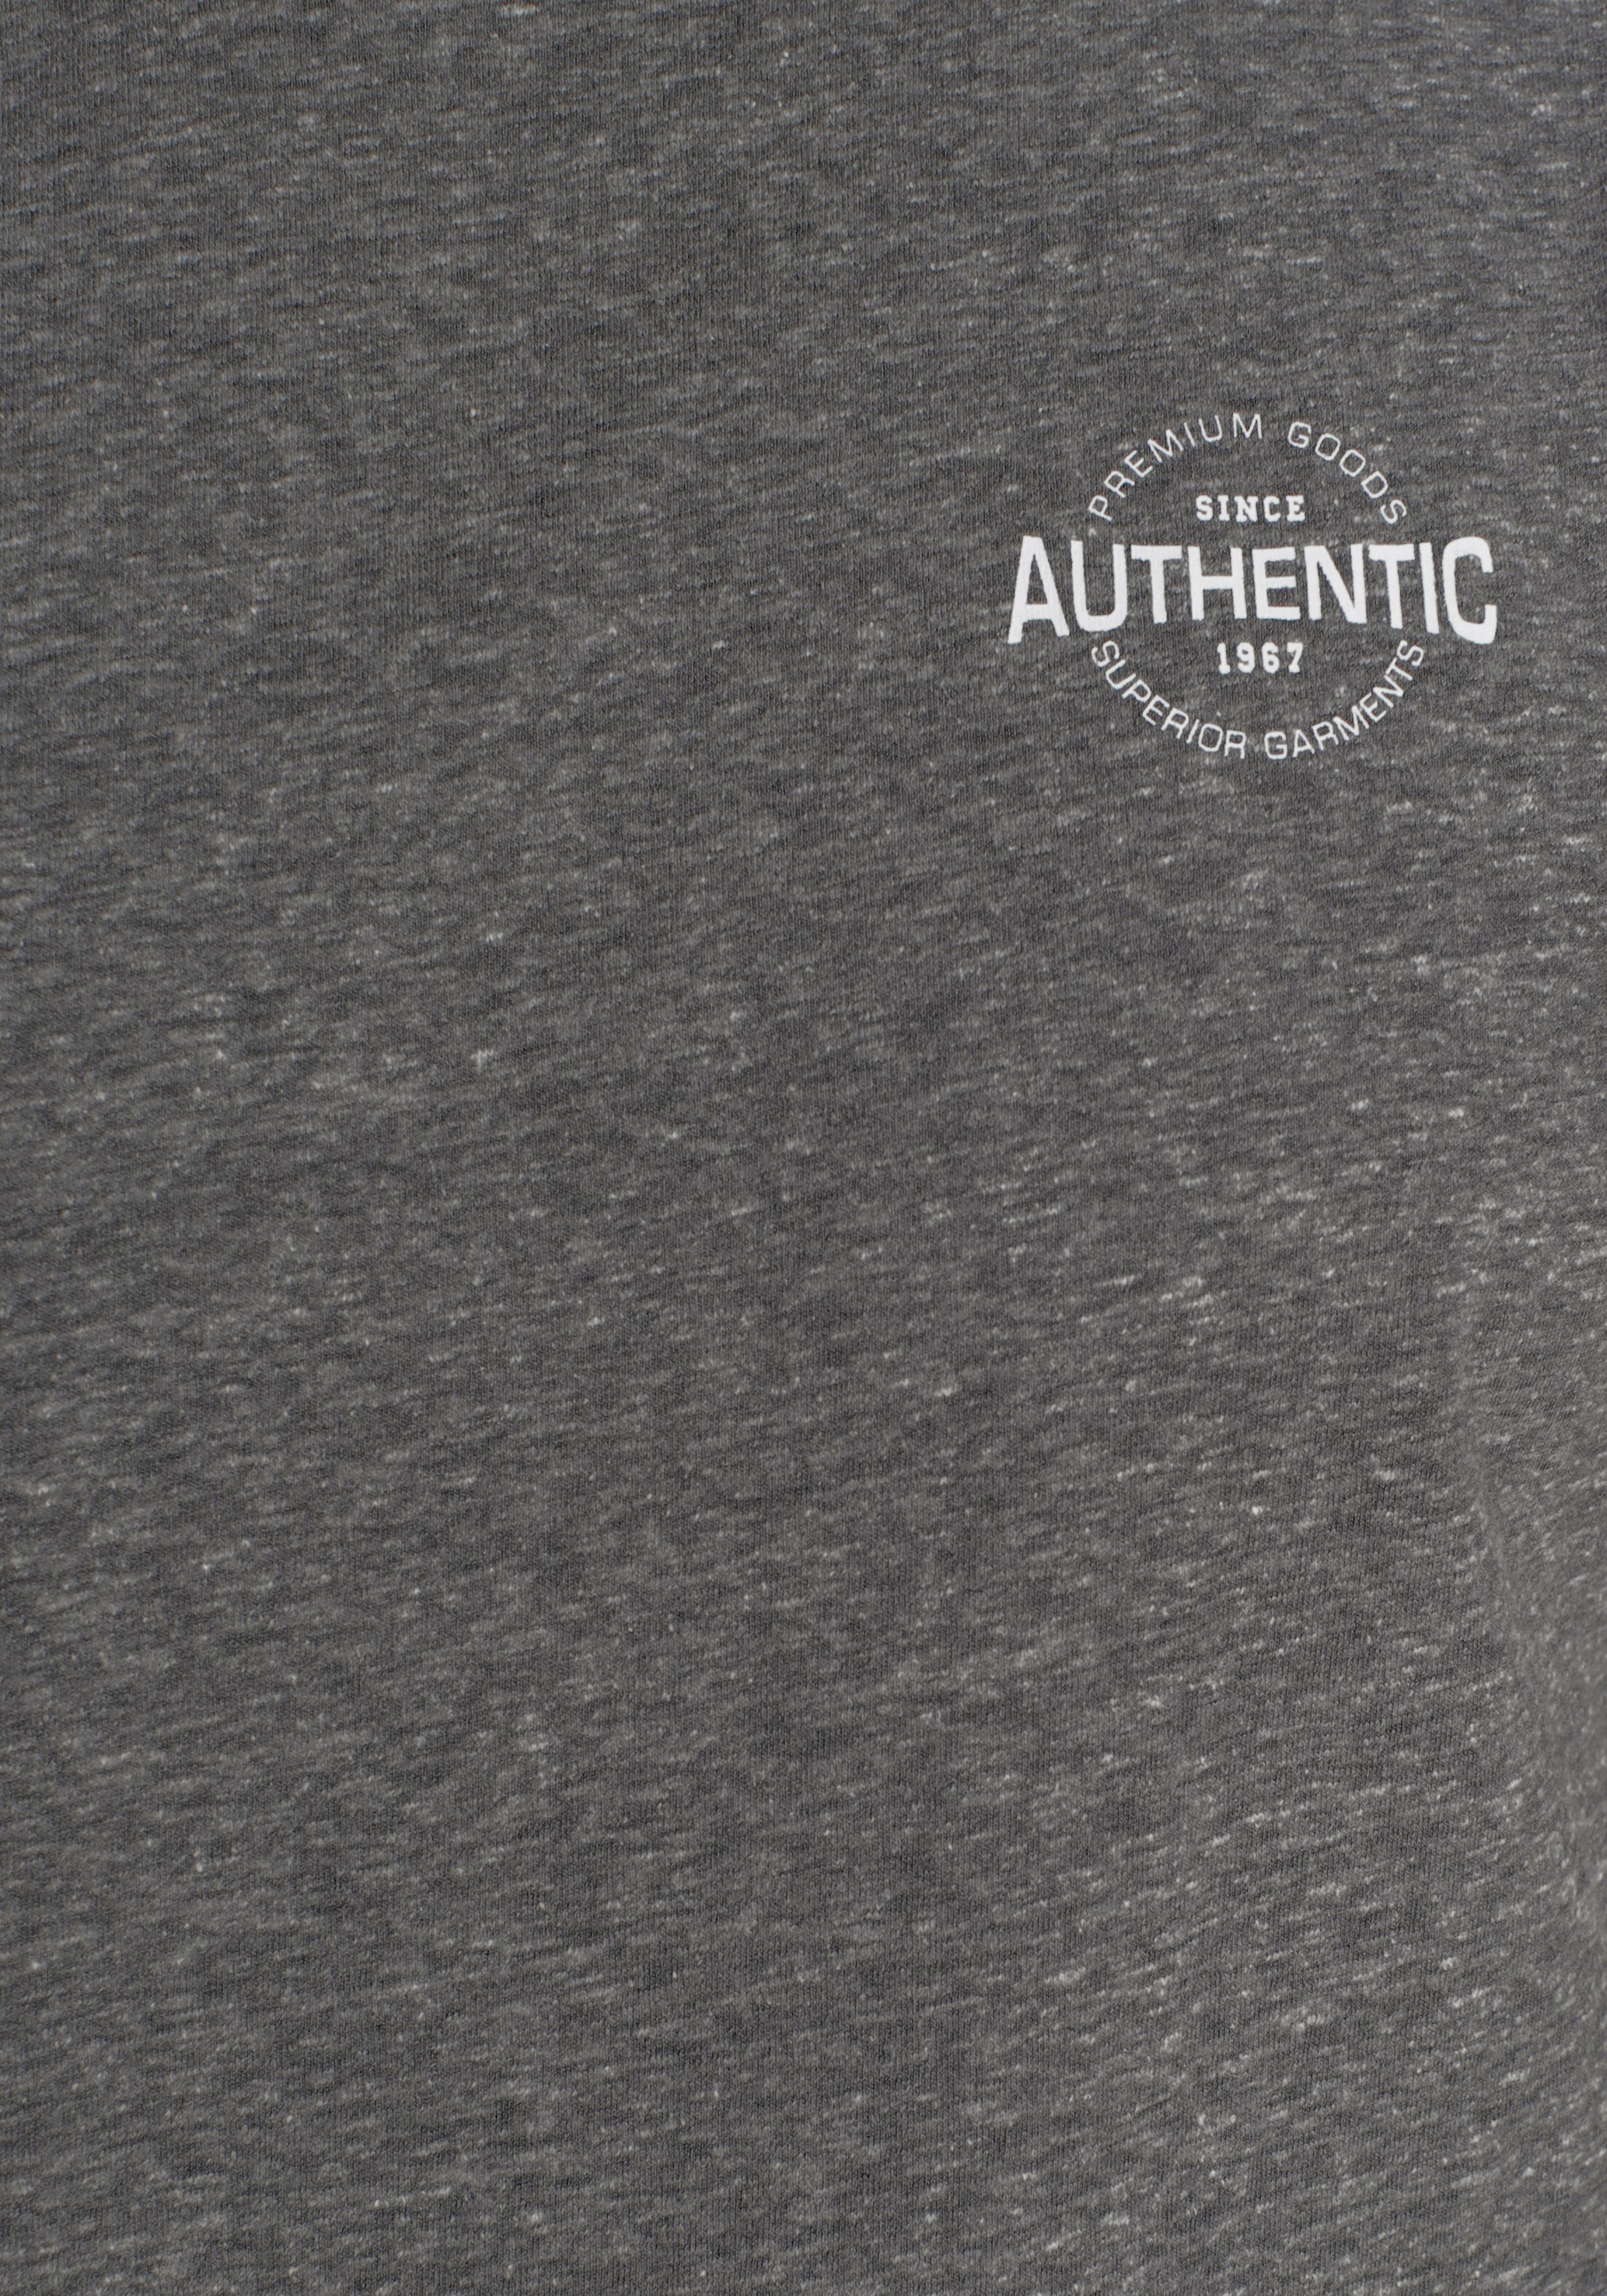 Melange meliert Logo besonderer Optik und Print in AJC anthrazit T-Shirt mit